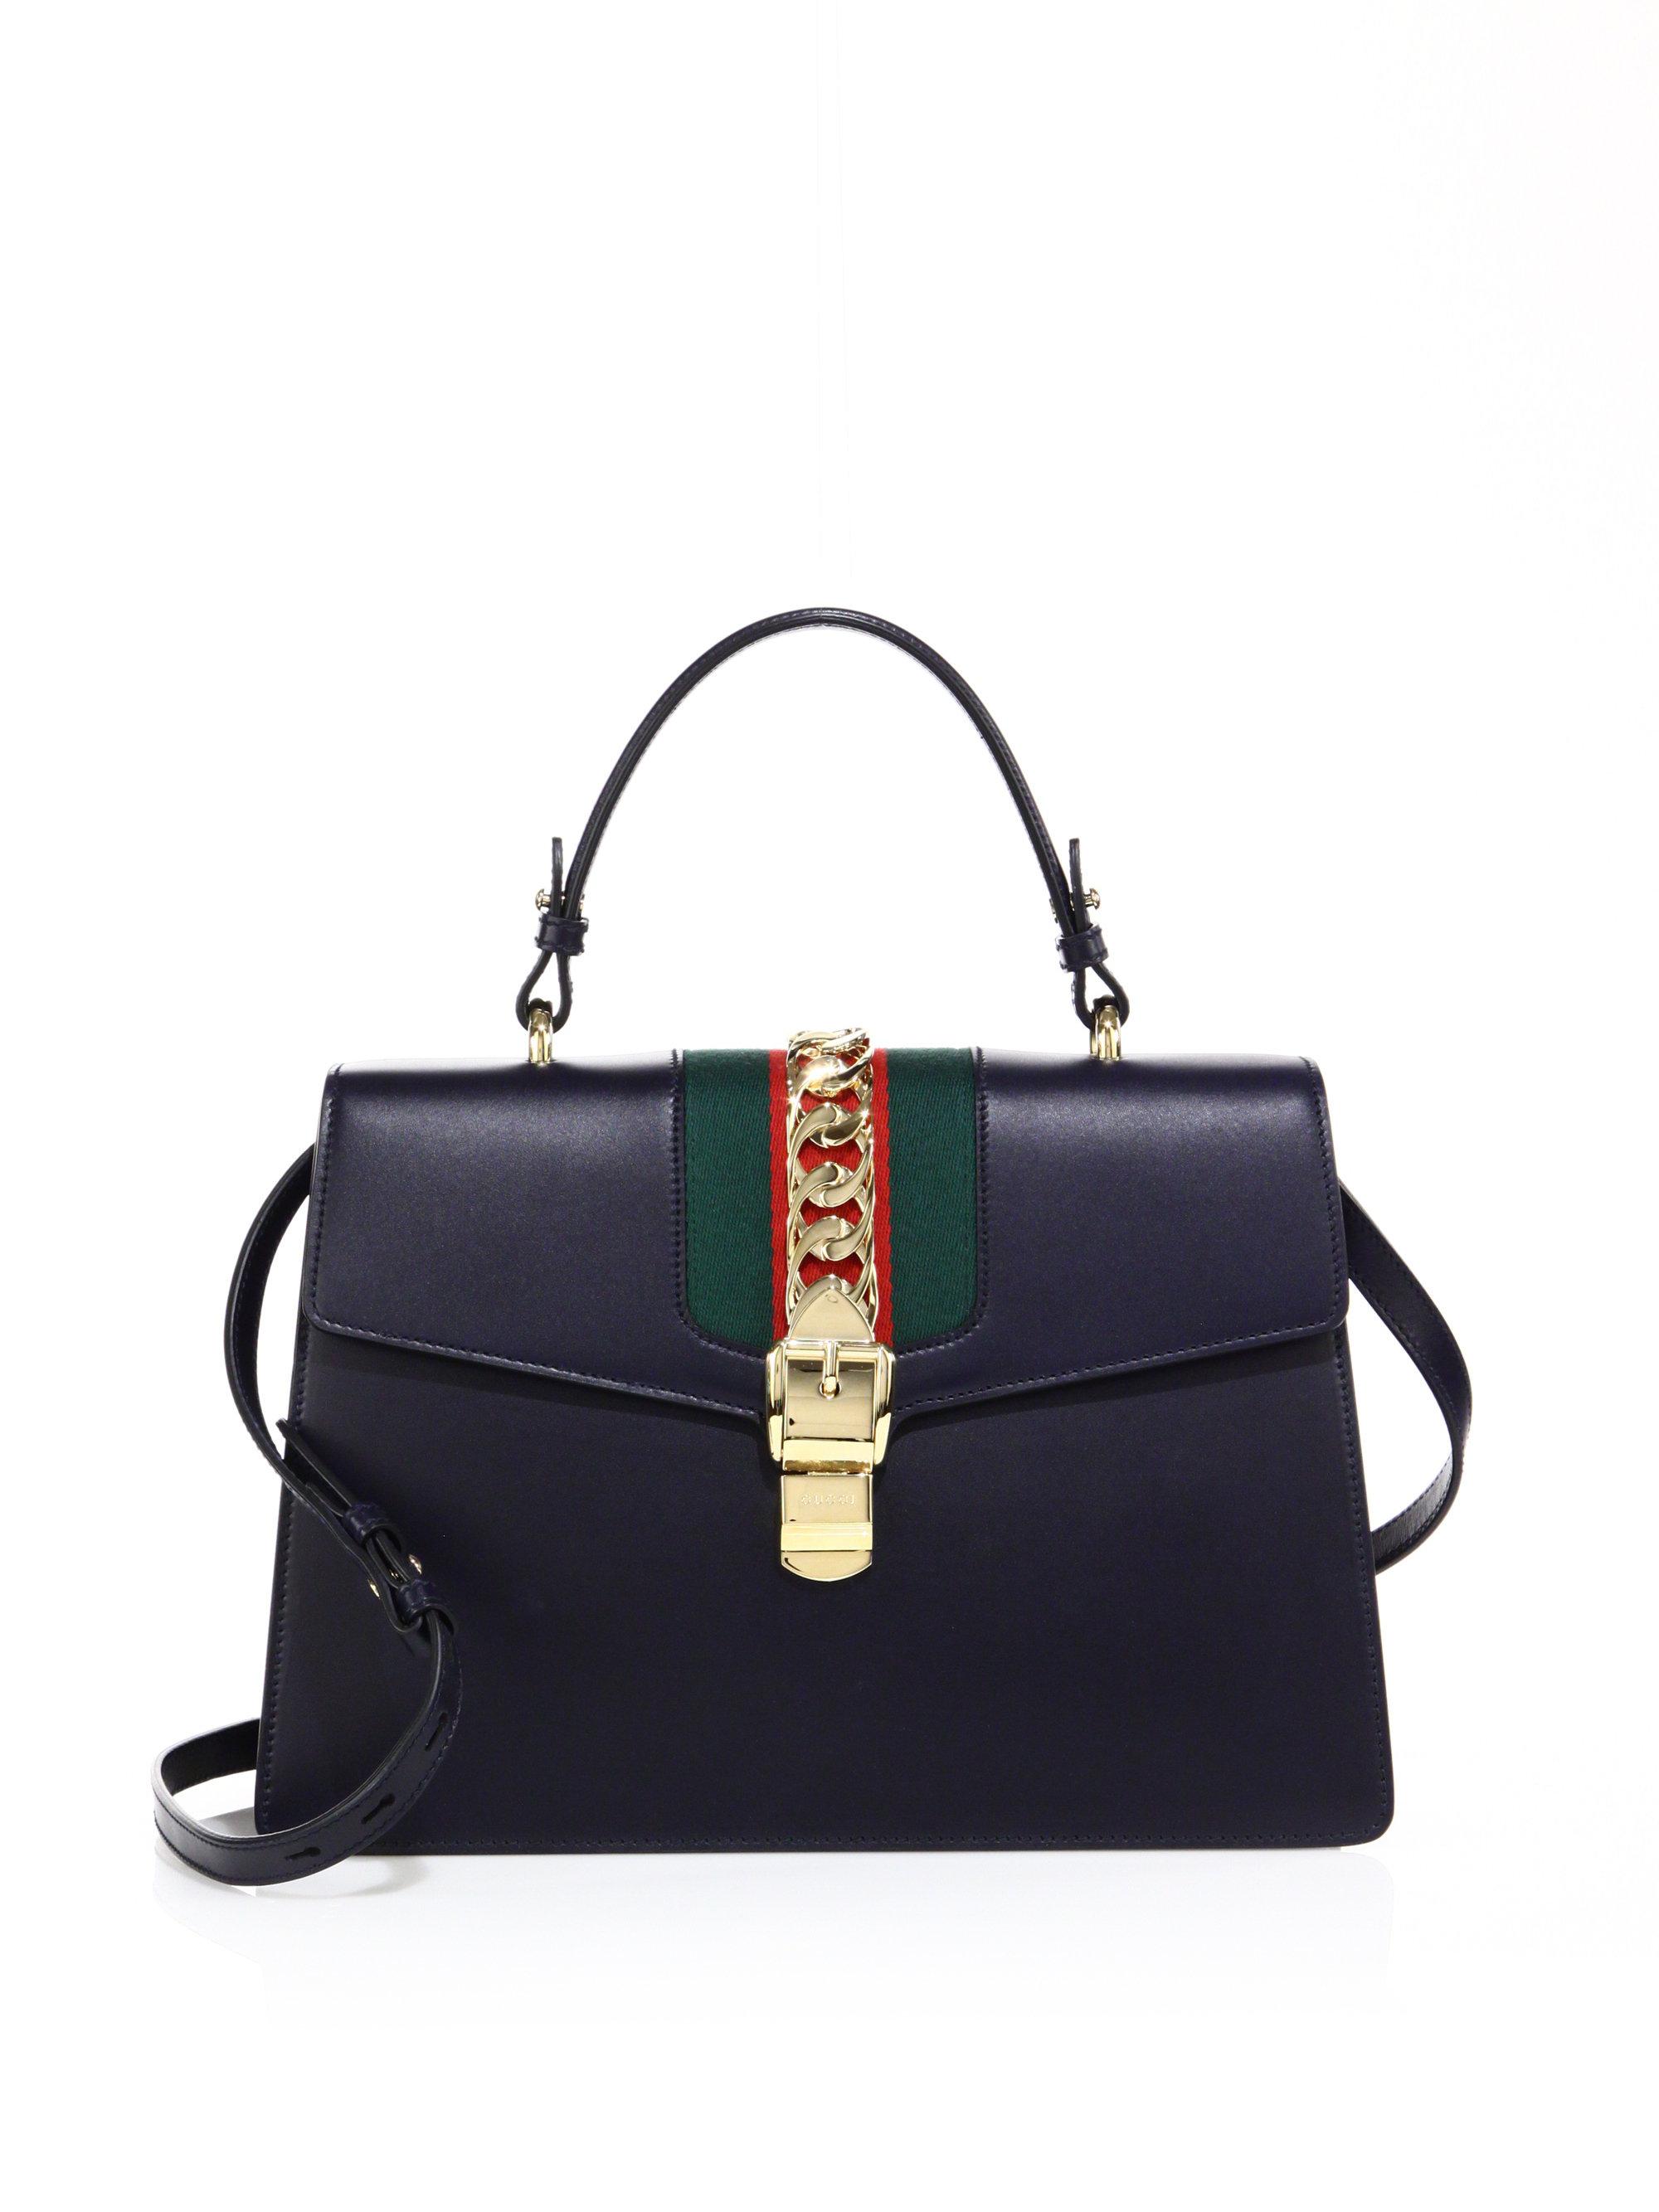 Gucci Sylvie Large Leather Shoulder Bag 